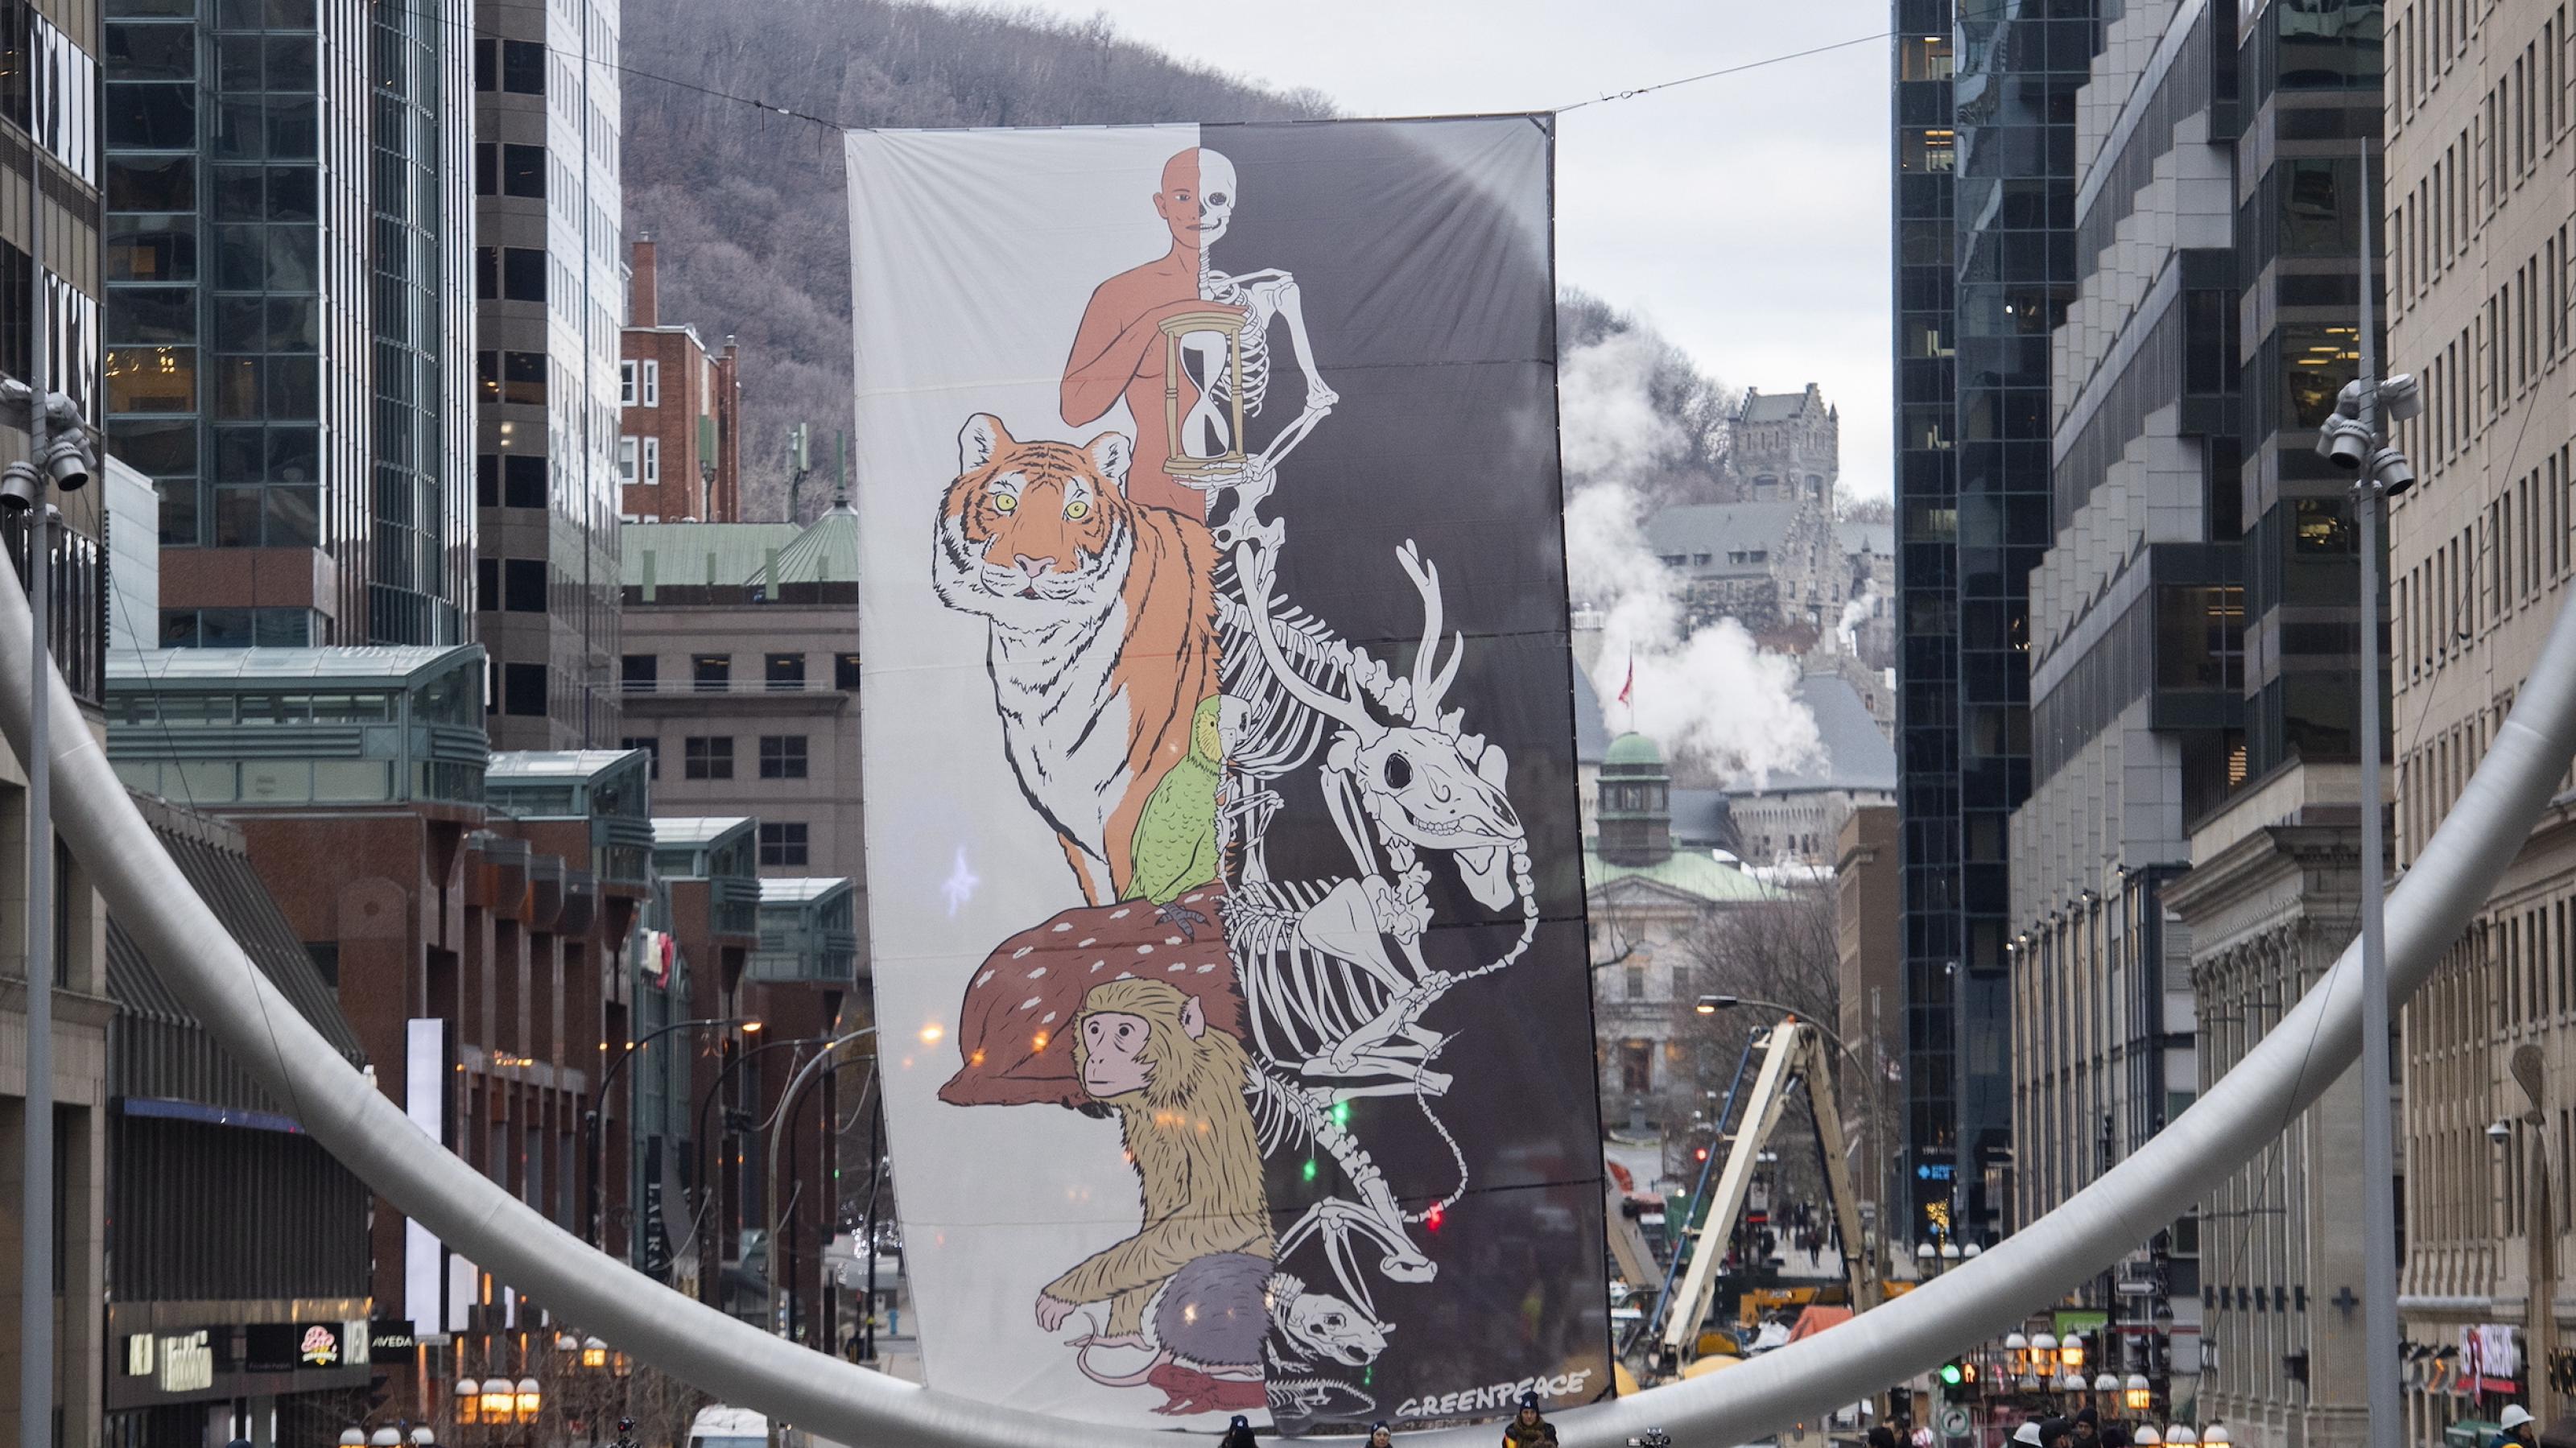 Winterliche Hauptstrasse in Montreal mit einem Banner, bei dem auf der linken Seite Lebewesen wie Mensch, Tiger und Affe zu sehen sind und auf der rechten Seite deren Skelette.